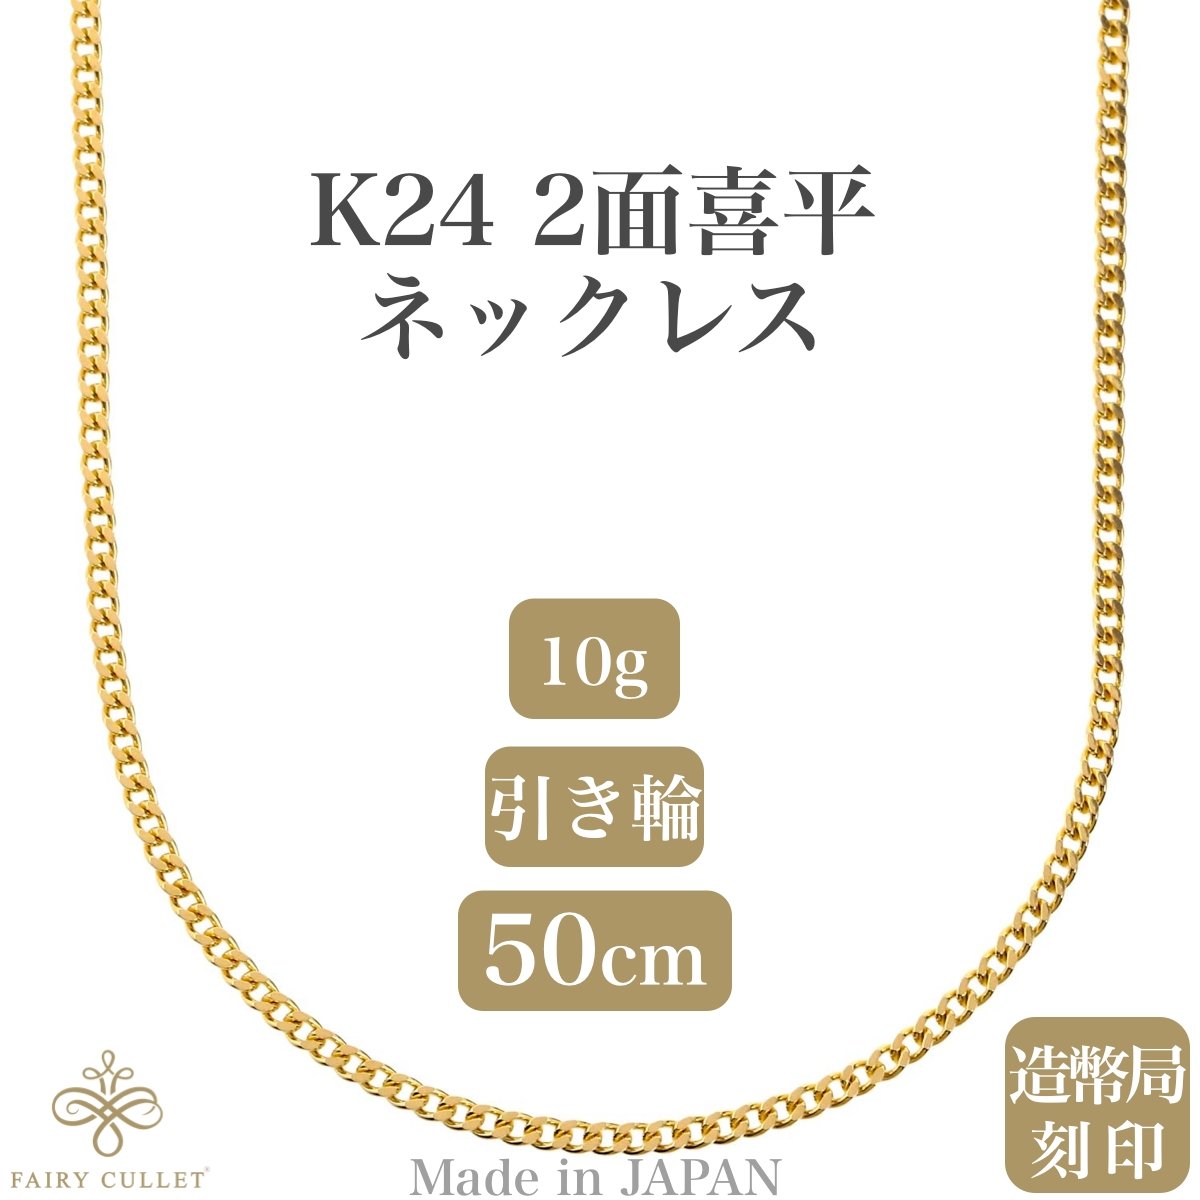 24金ネックレス K24 2面喜平チェーン 日本製 検定印 10g 50cm 引き輪 